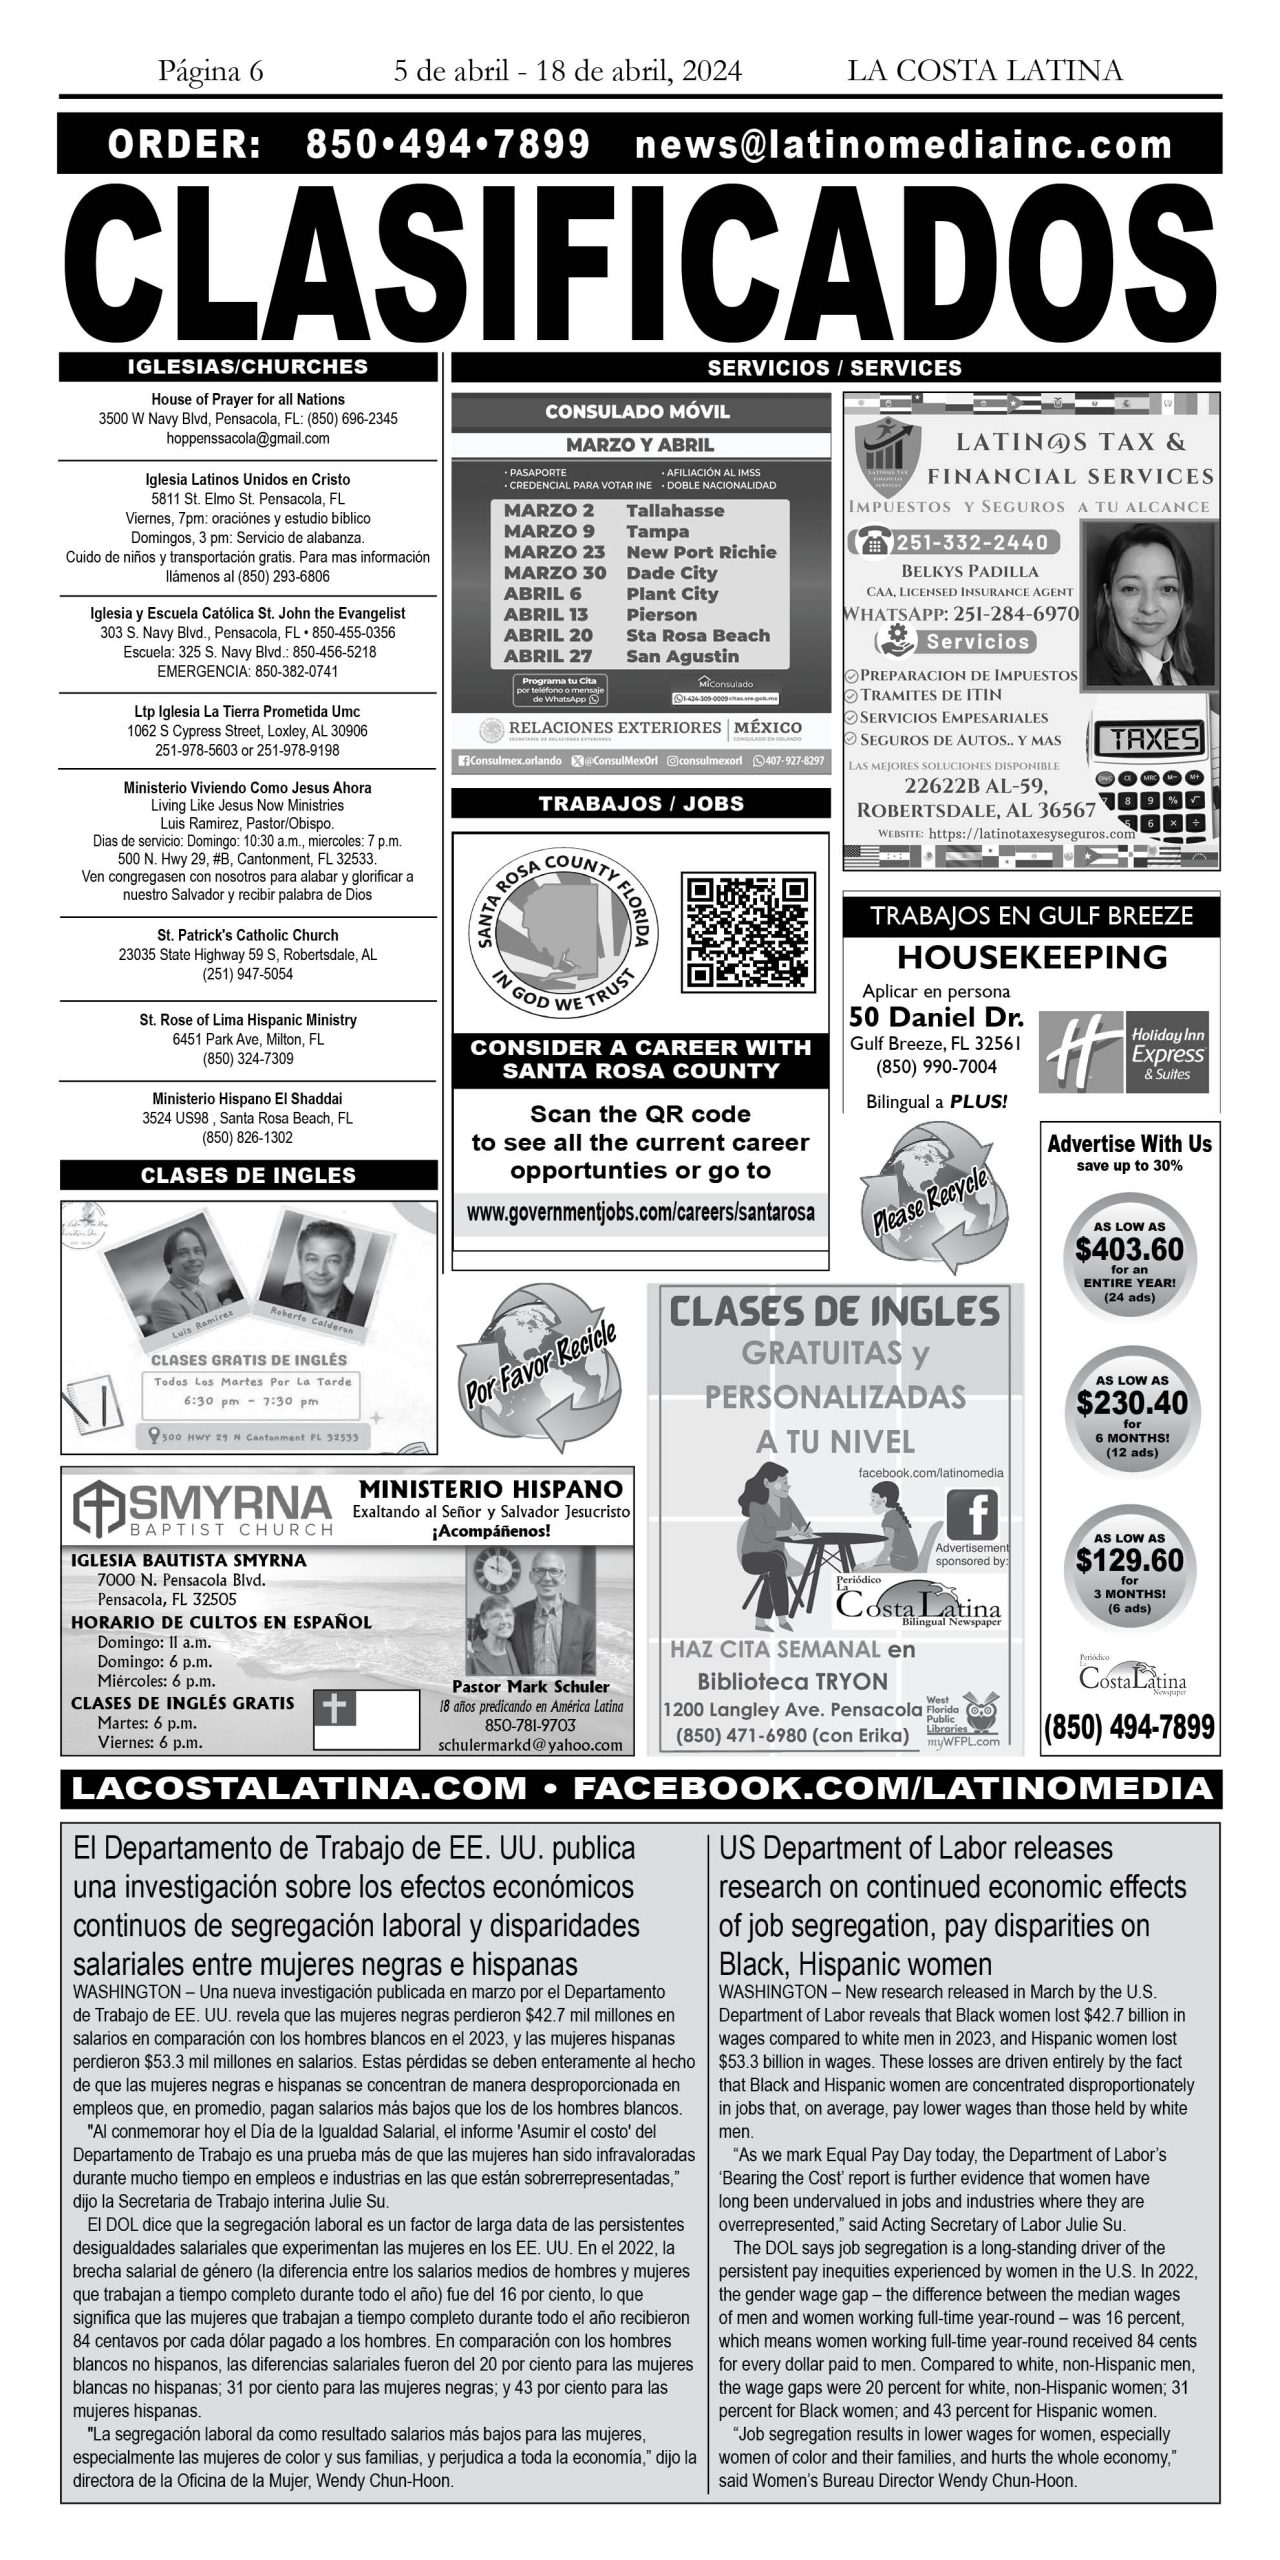 La Costa Latina April 5 - April 18, 2024 page 6